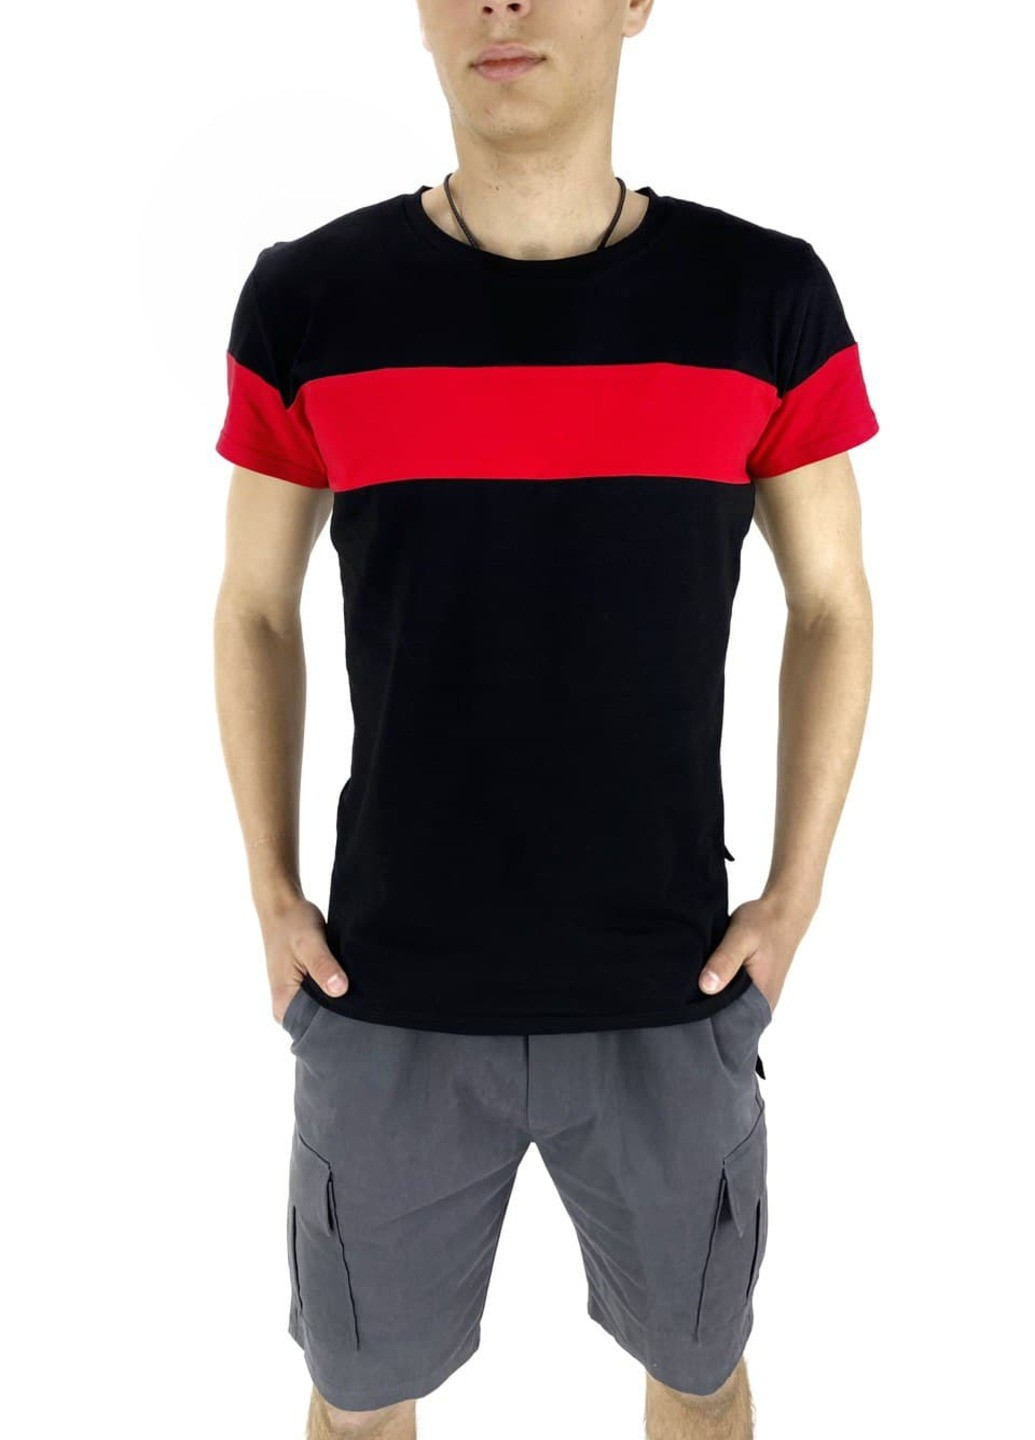 Комбинированный летний костюм летний мужской (футболка "color stripe" черная - красная + шорты miami серые) Intruder